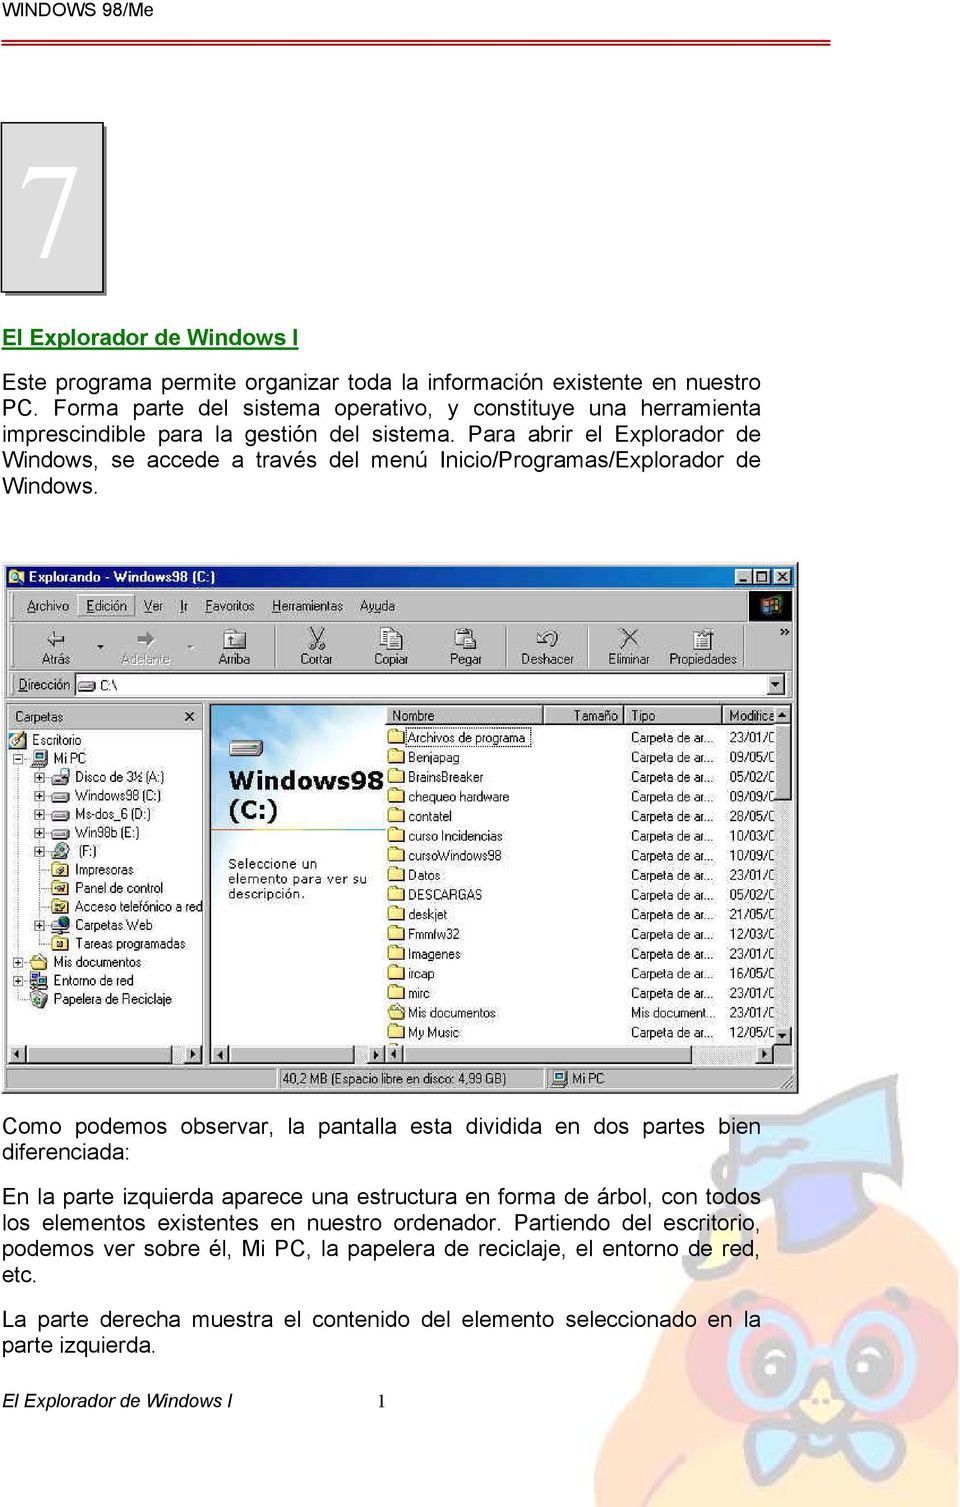 Para abrir el Explorador de Windows, se accede a través del menú Inicio/Programas/Explorador de Windows.